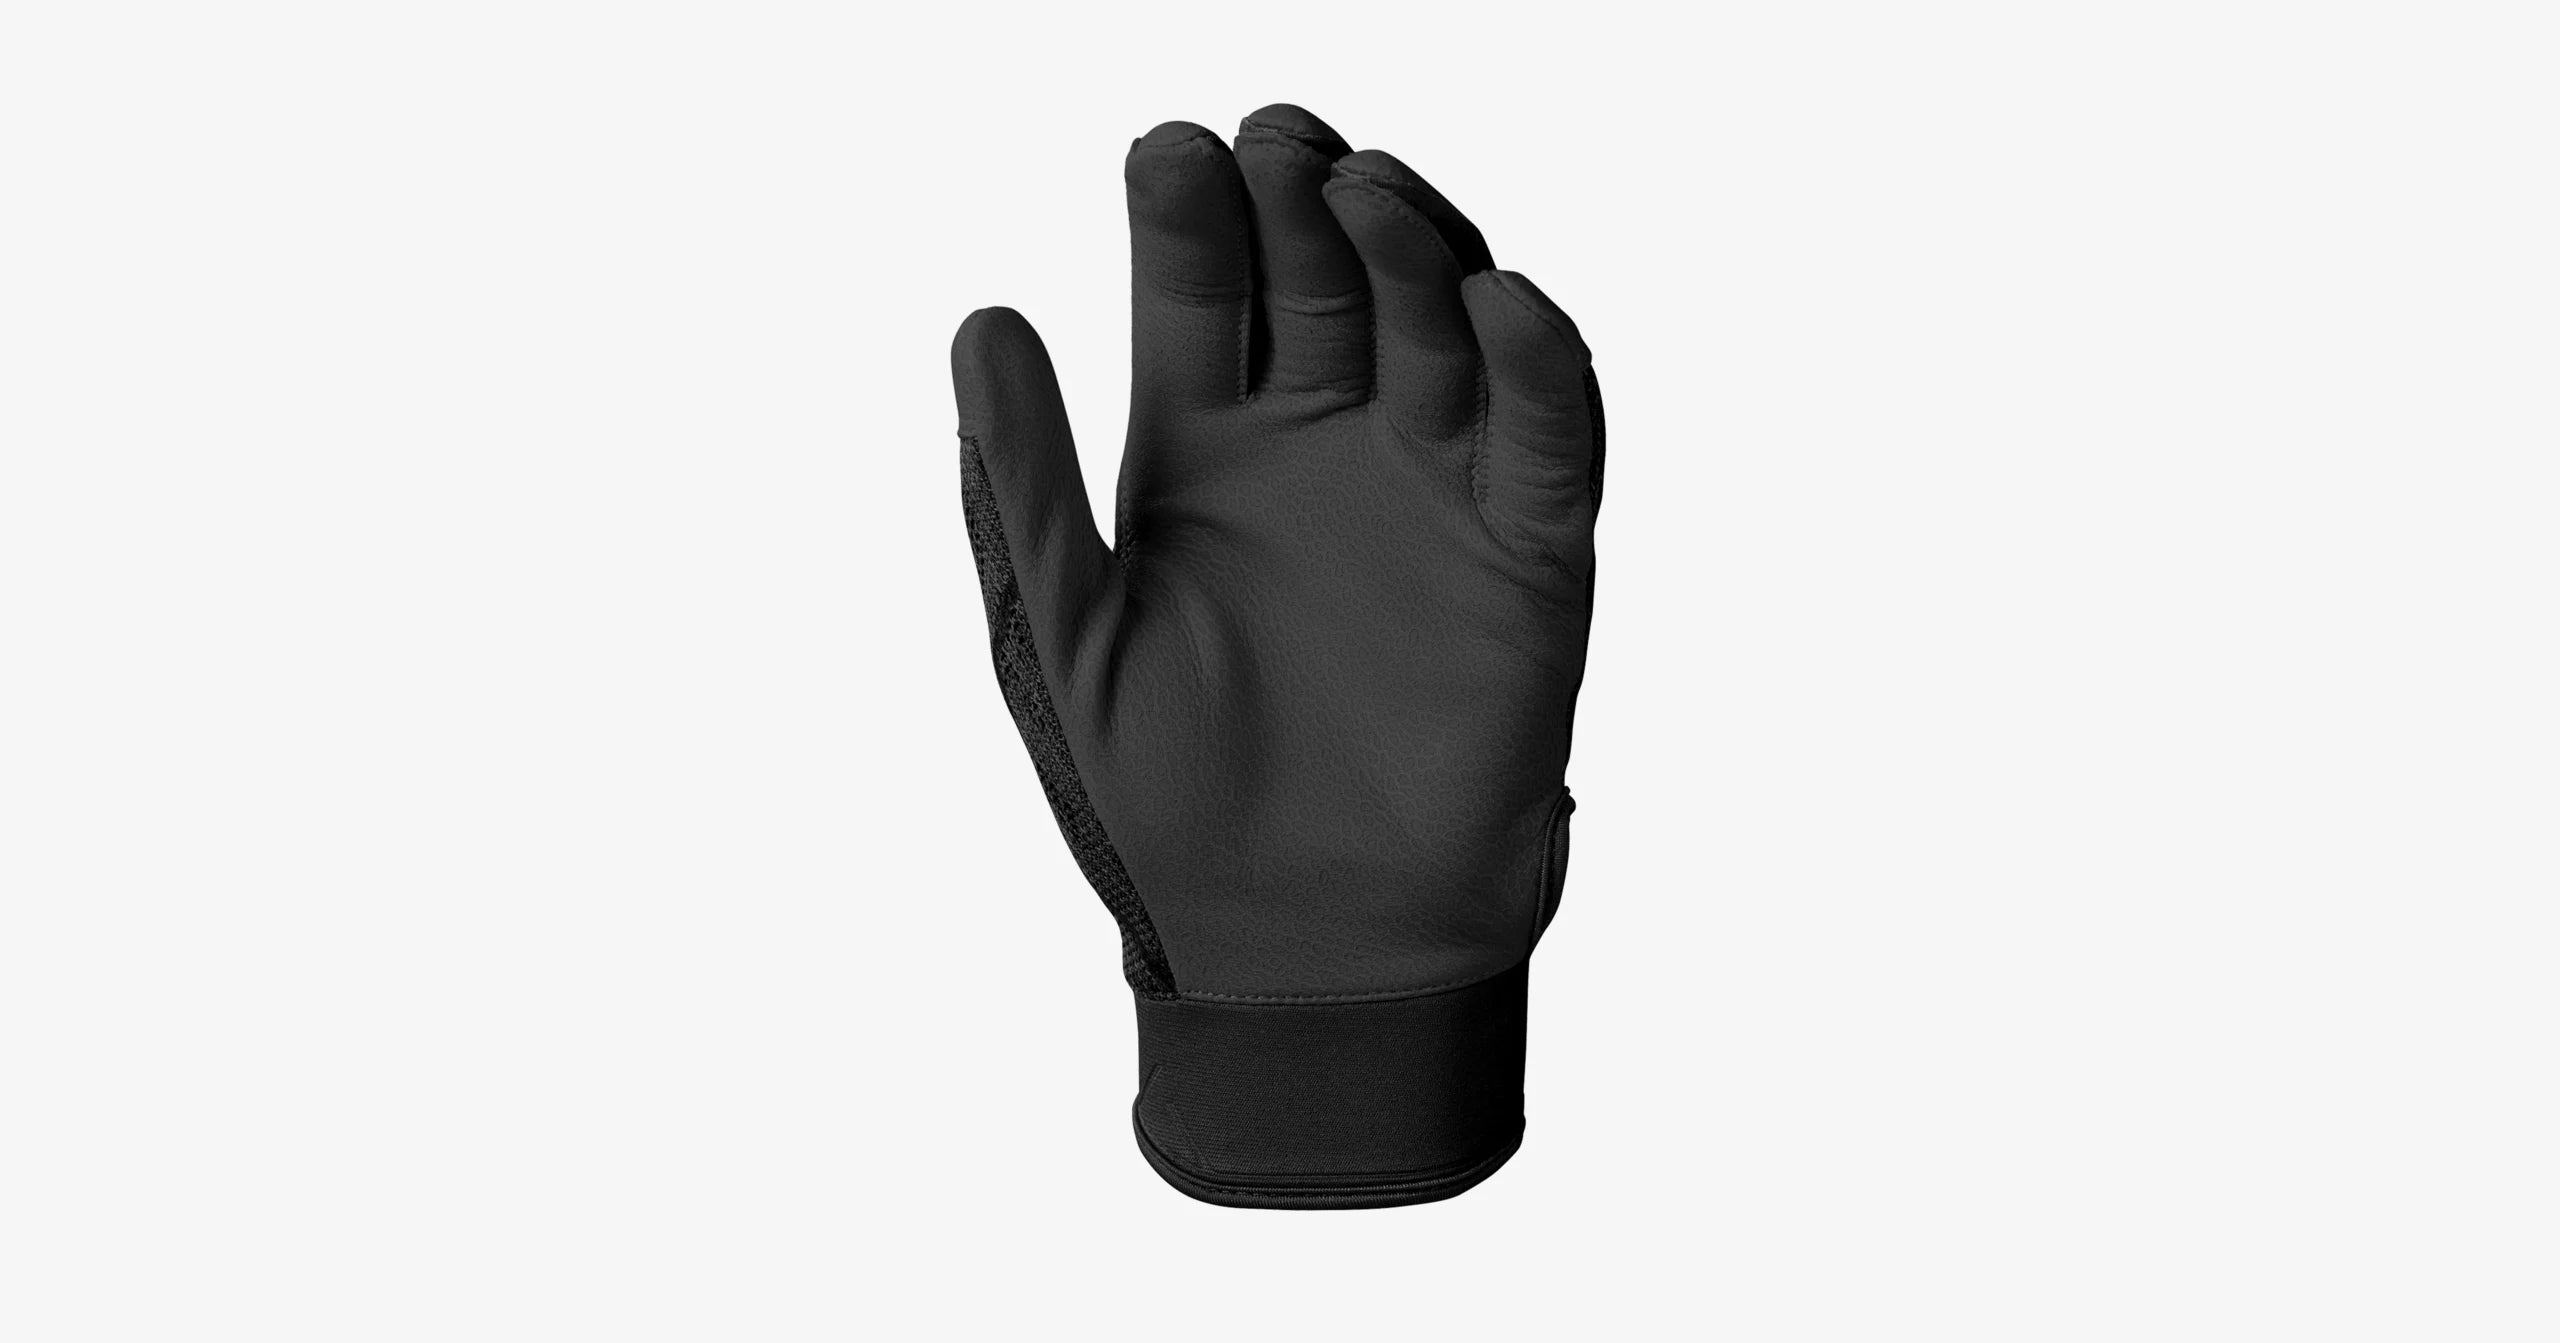 EvoShield PRO-SRZ Batting Gloves